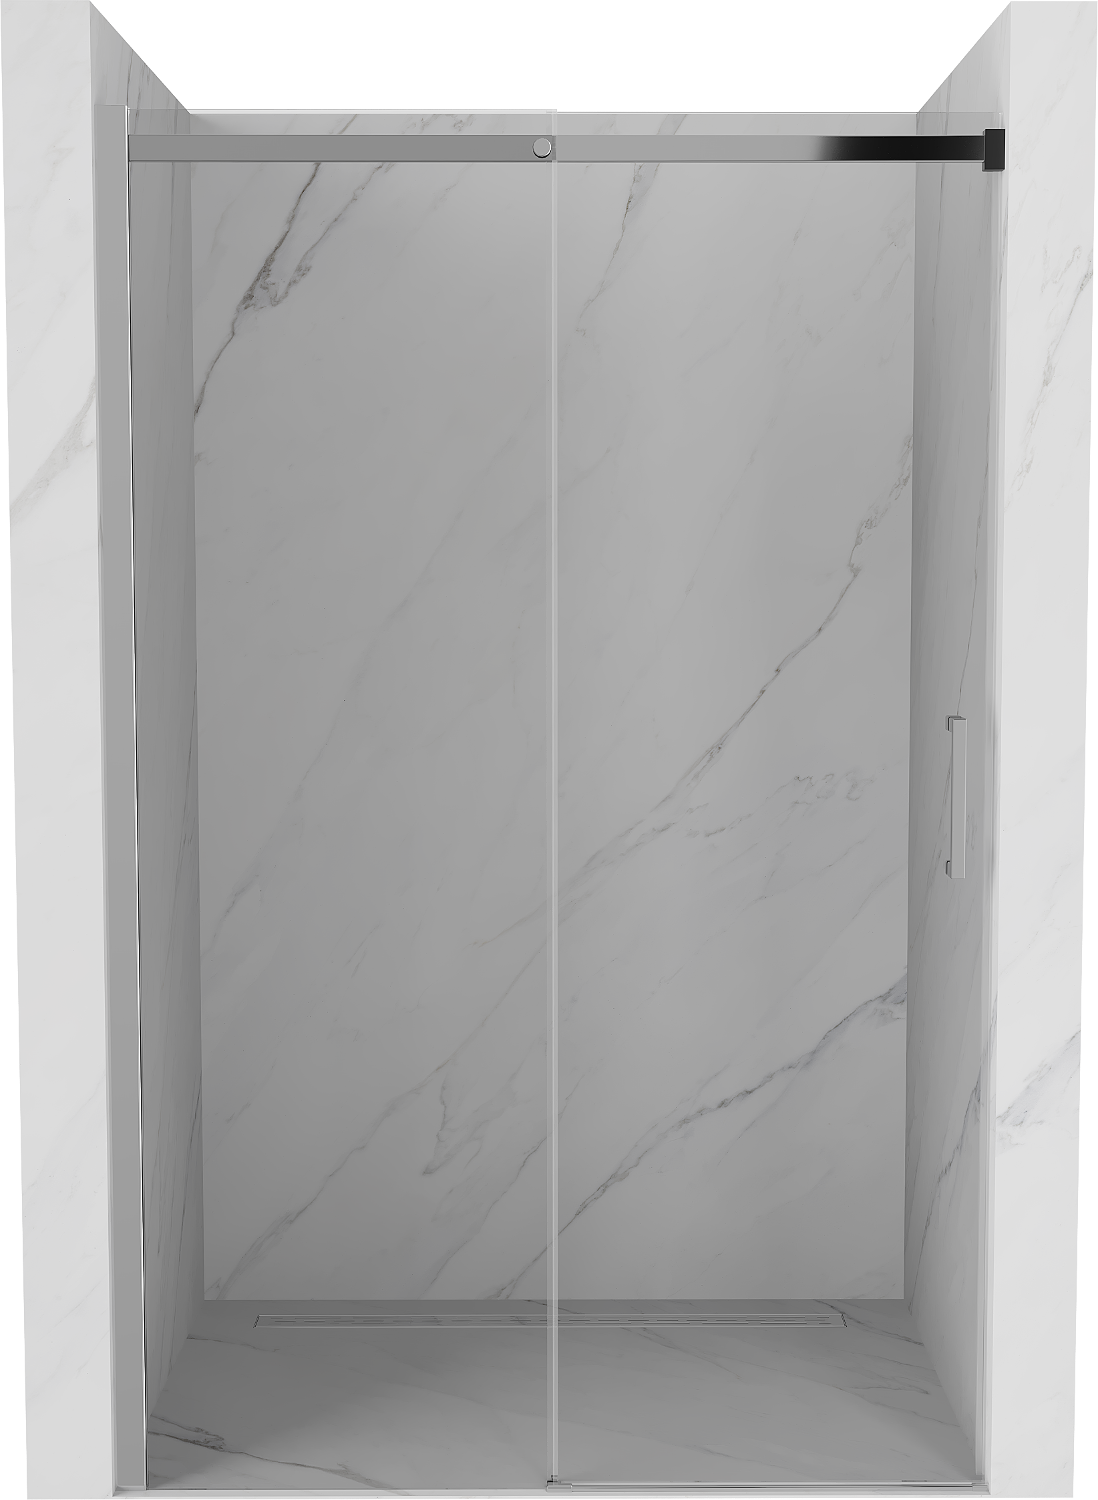 Mexen Omega drzwi prysznicowe rozsuwane 140 cm, transparent, chrom - 825-140-000-01-00